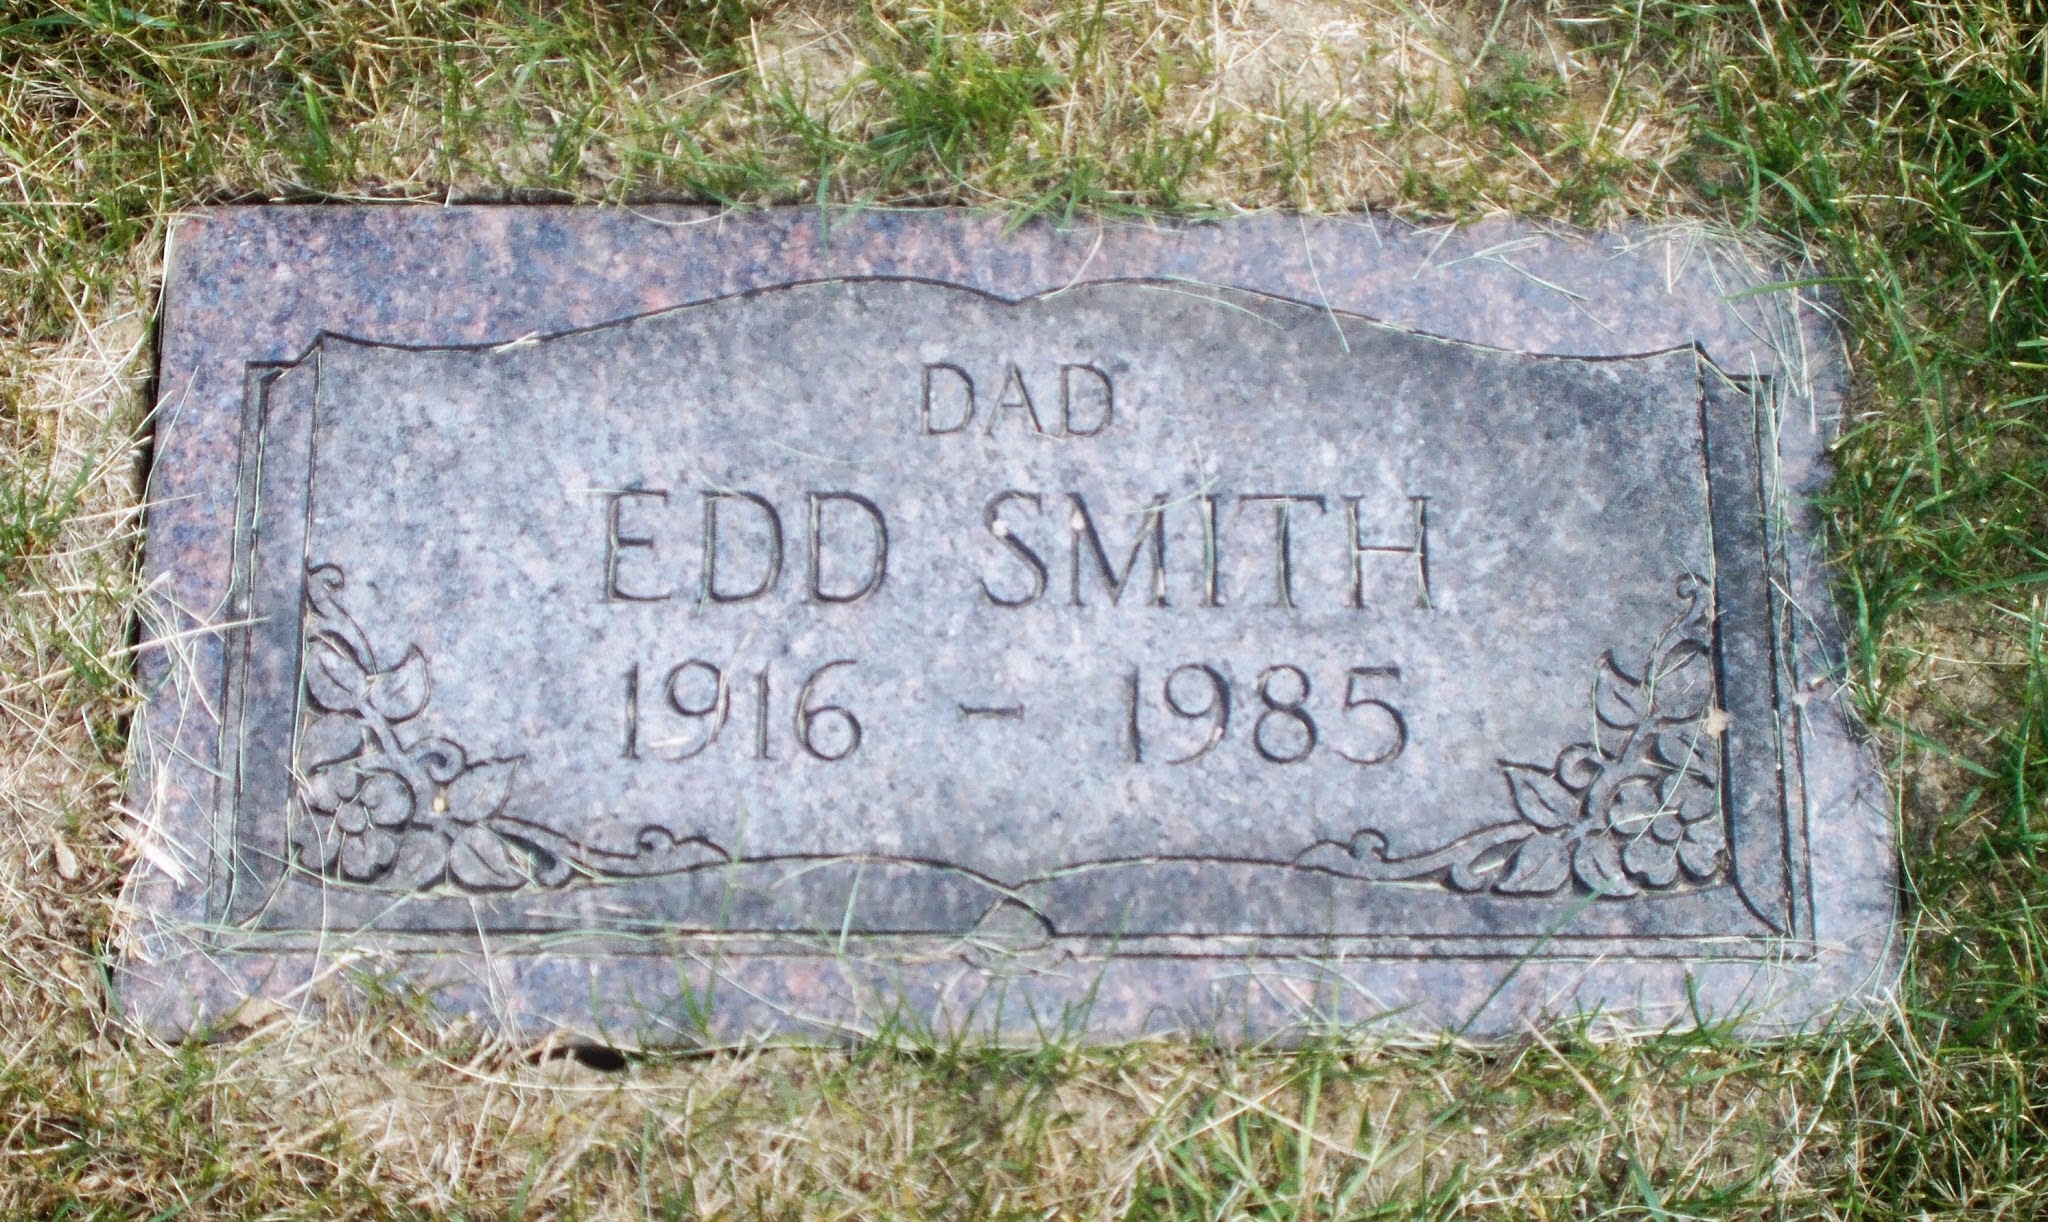 Edd Smith